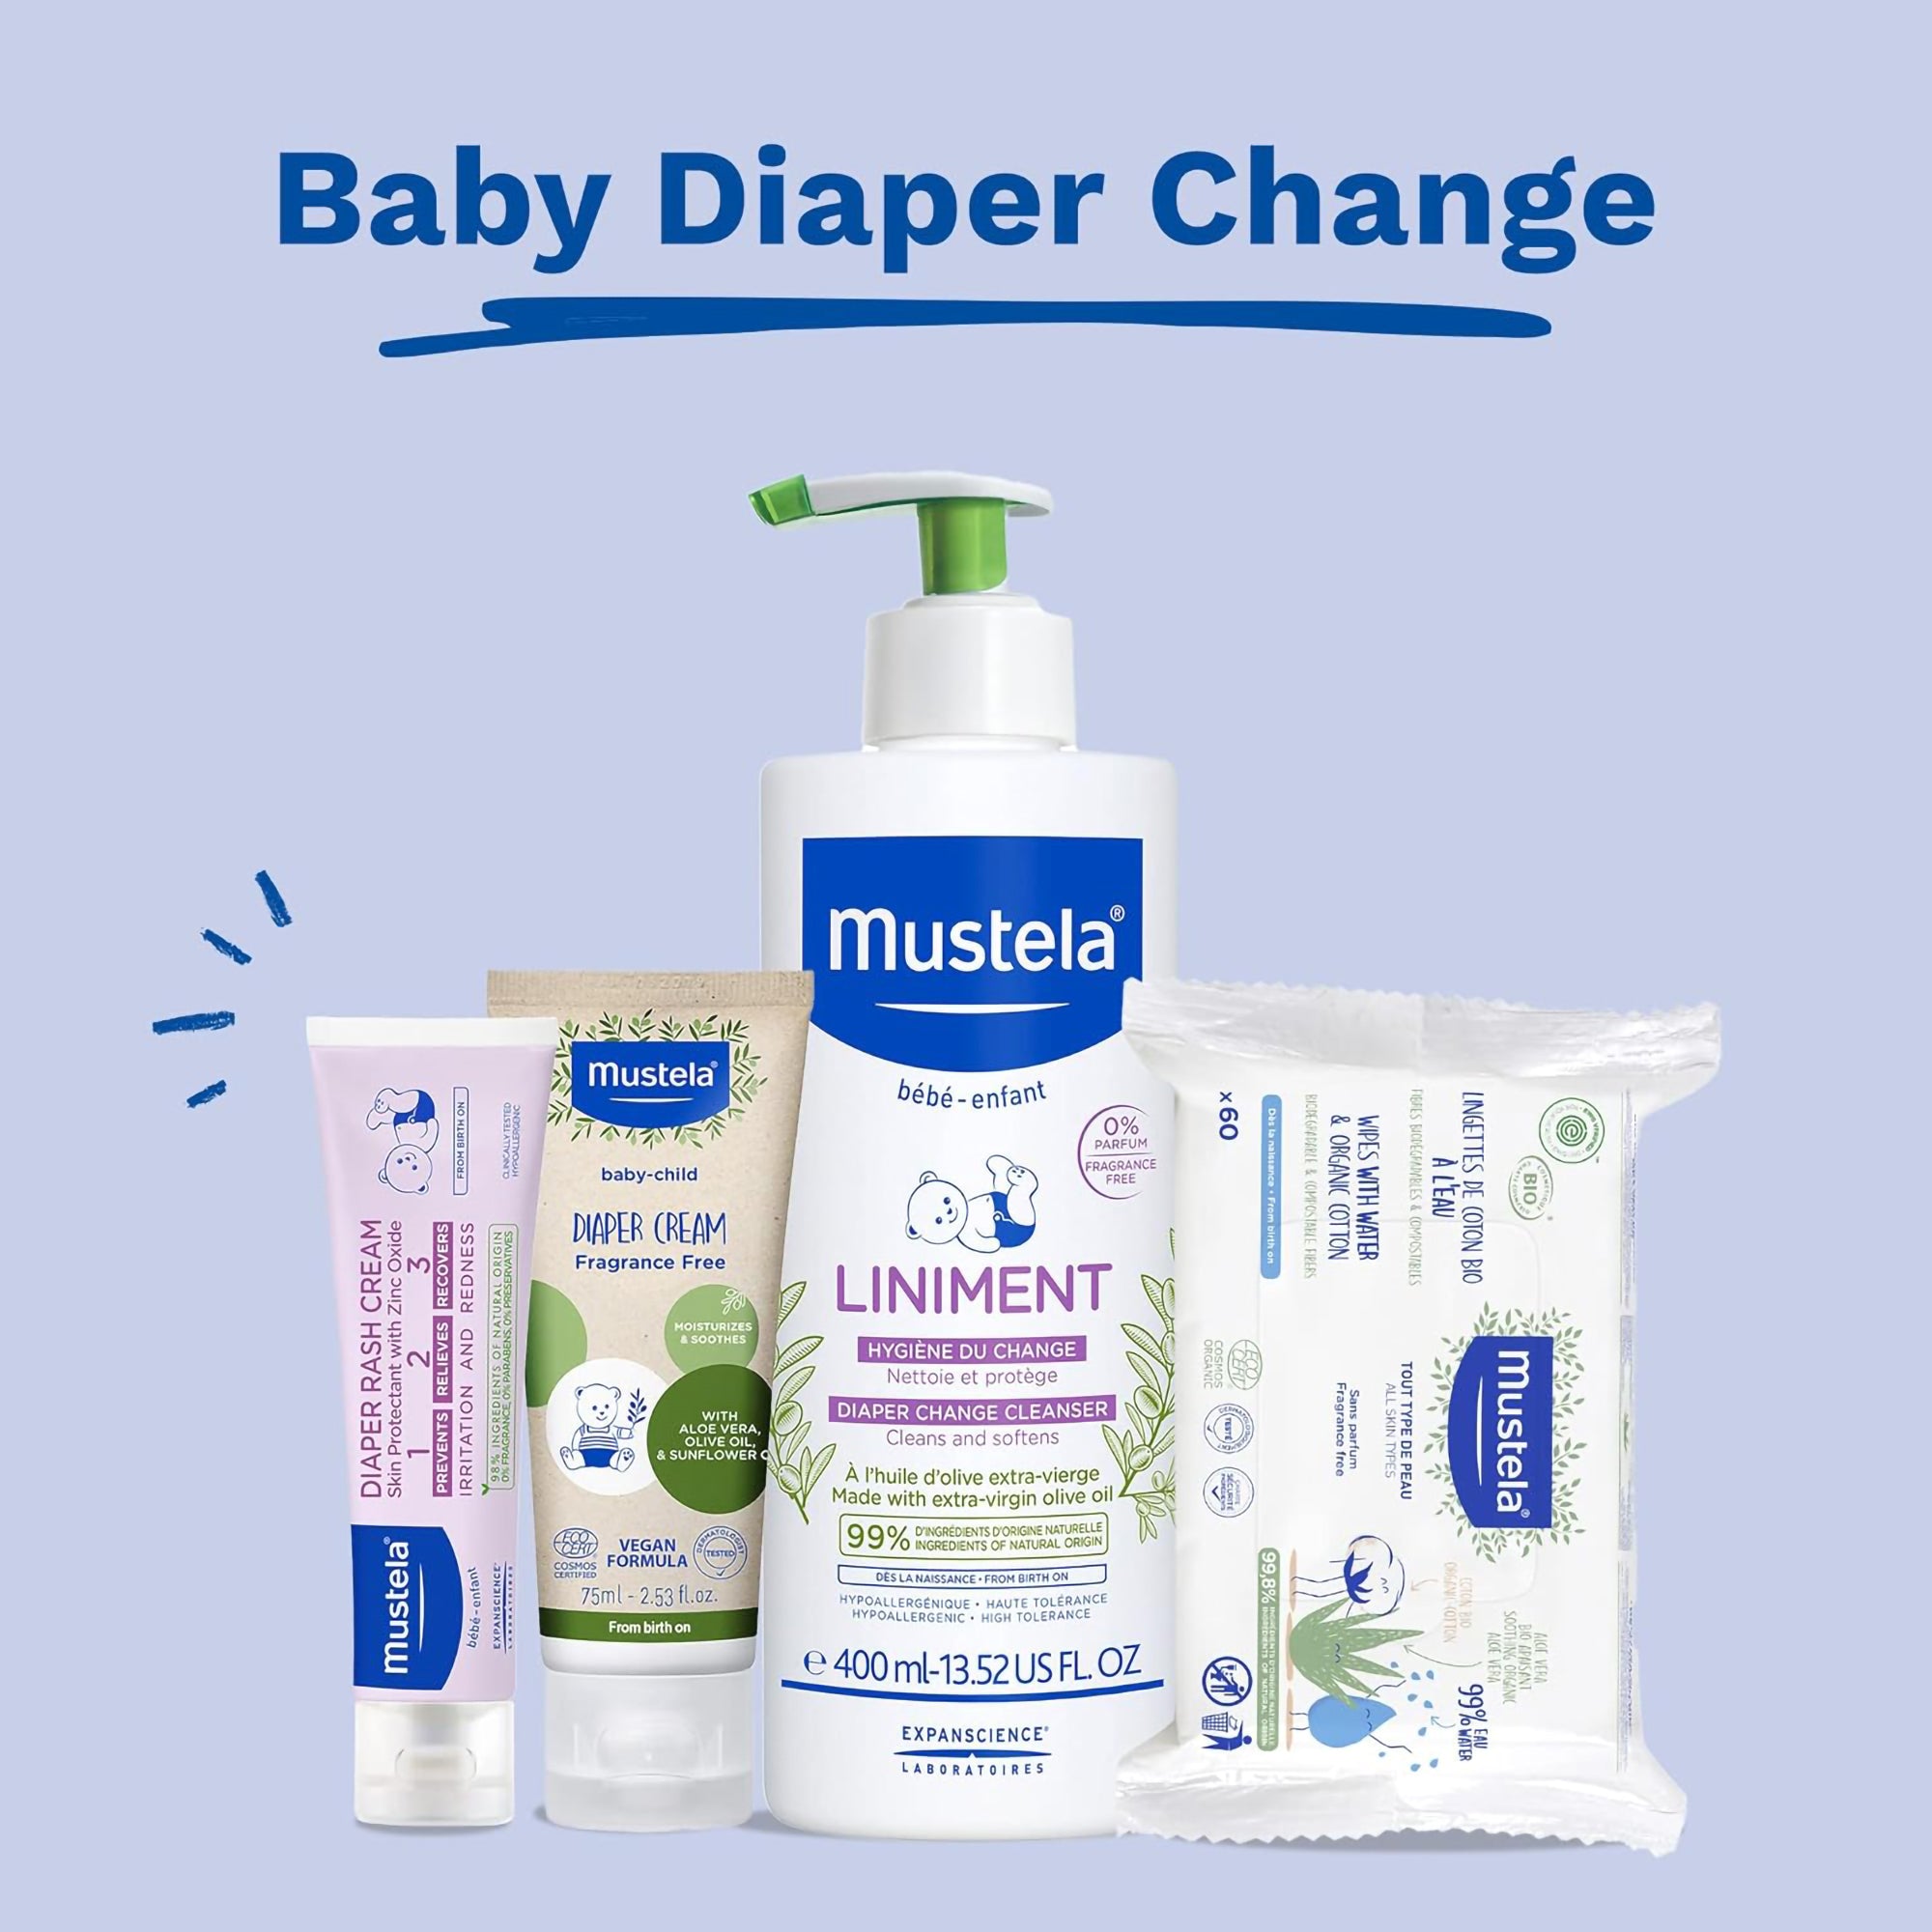 Mustela Baby Diaper Rash Cream / 3.8OZ